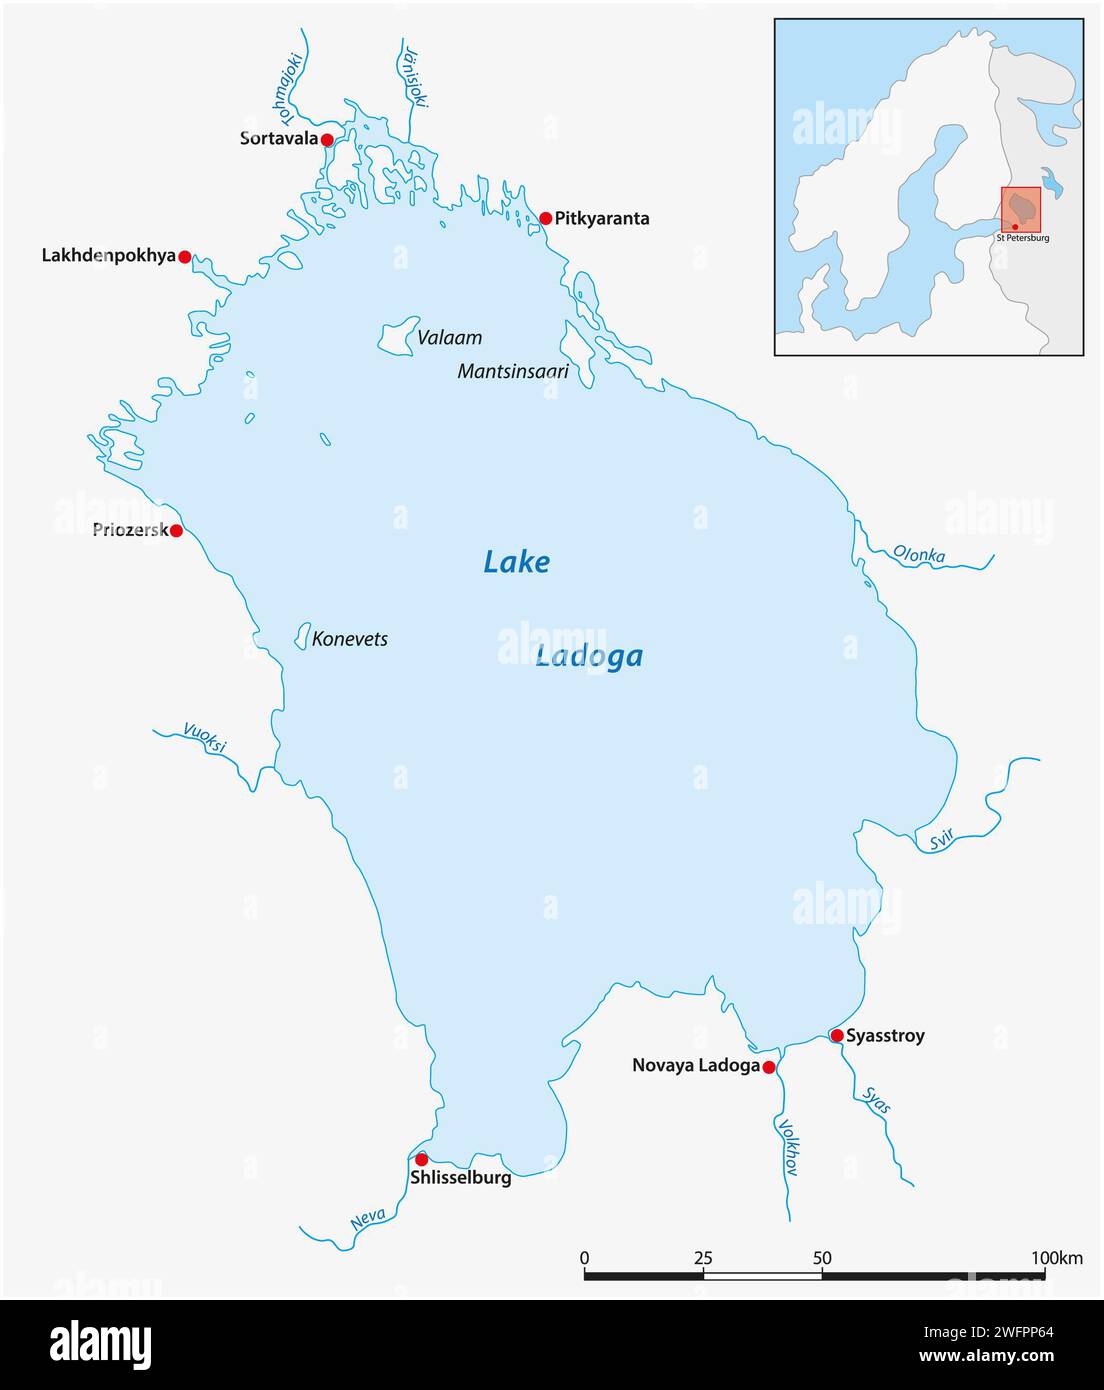 Einfache Übersichtskarte des Ladoga-Sees, Karelien, Russland Stockfoto